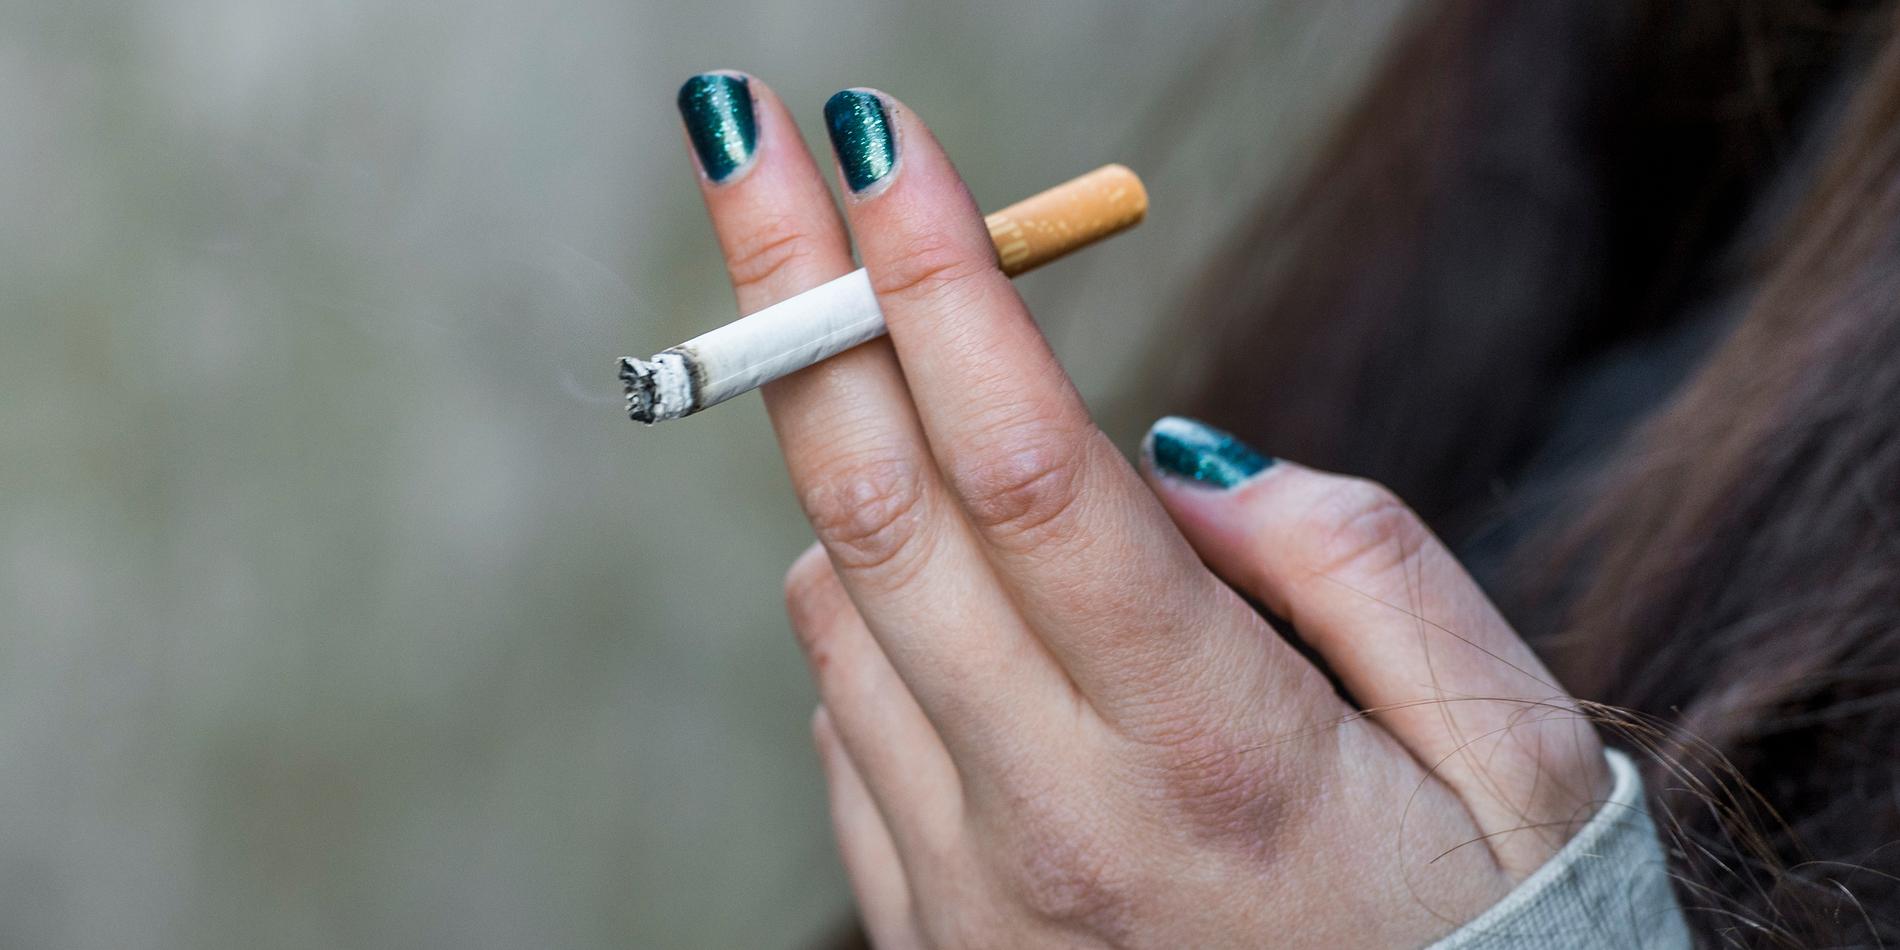 Andelen unga som röker minskar kraftigt i Sigtuna, enligt en stor enkät. 